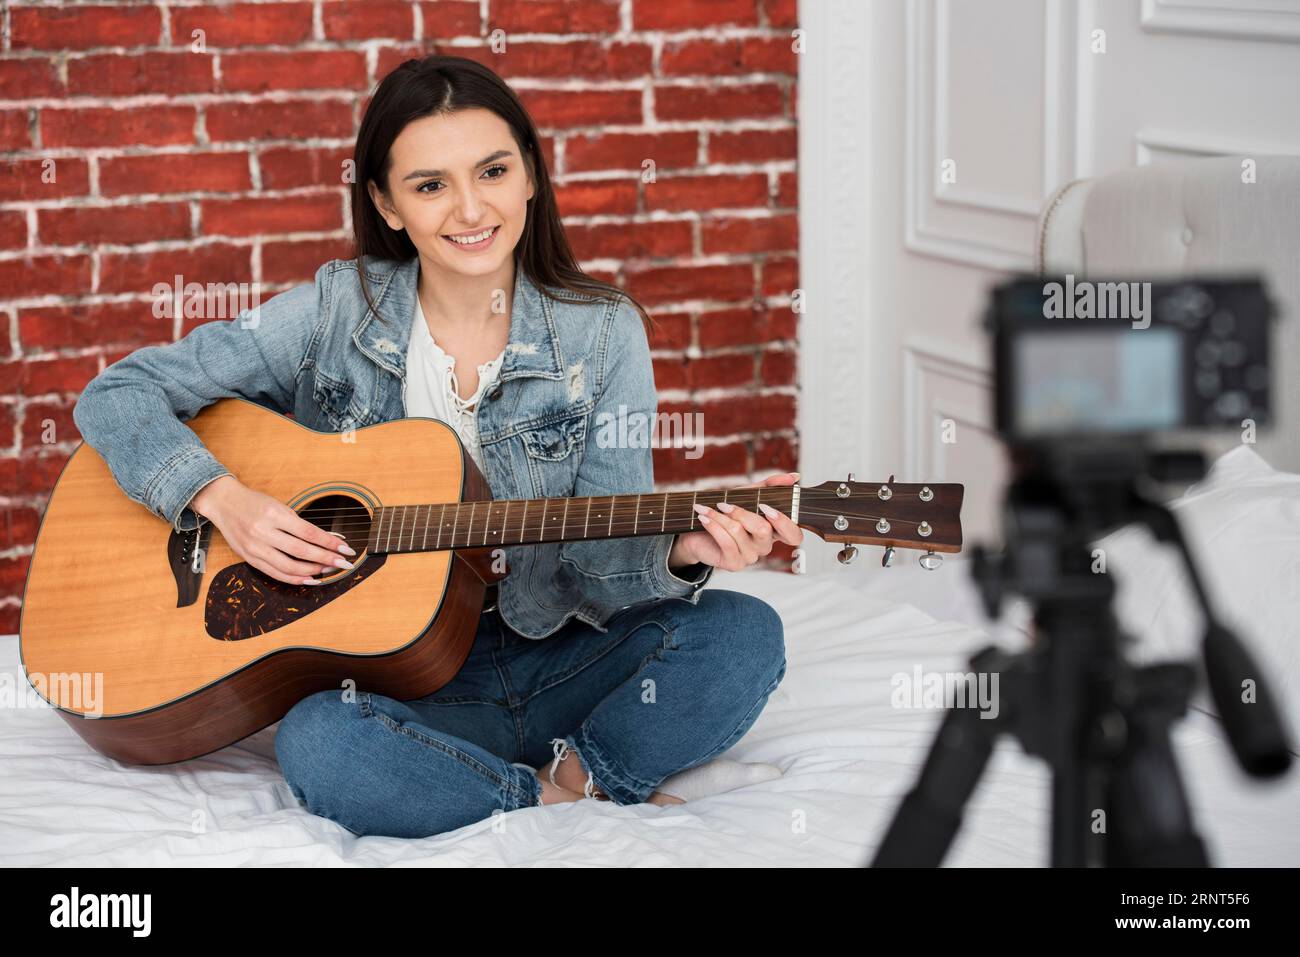 Beautiful young woman playing guitar Stock Photo